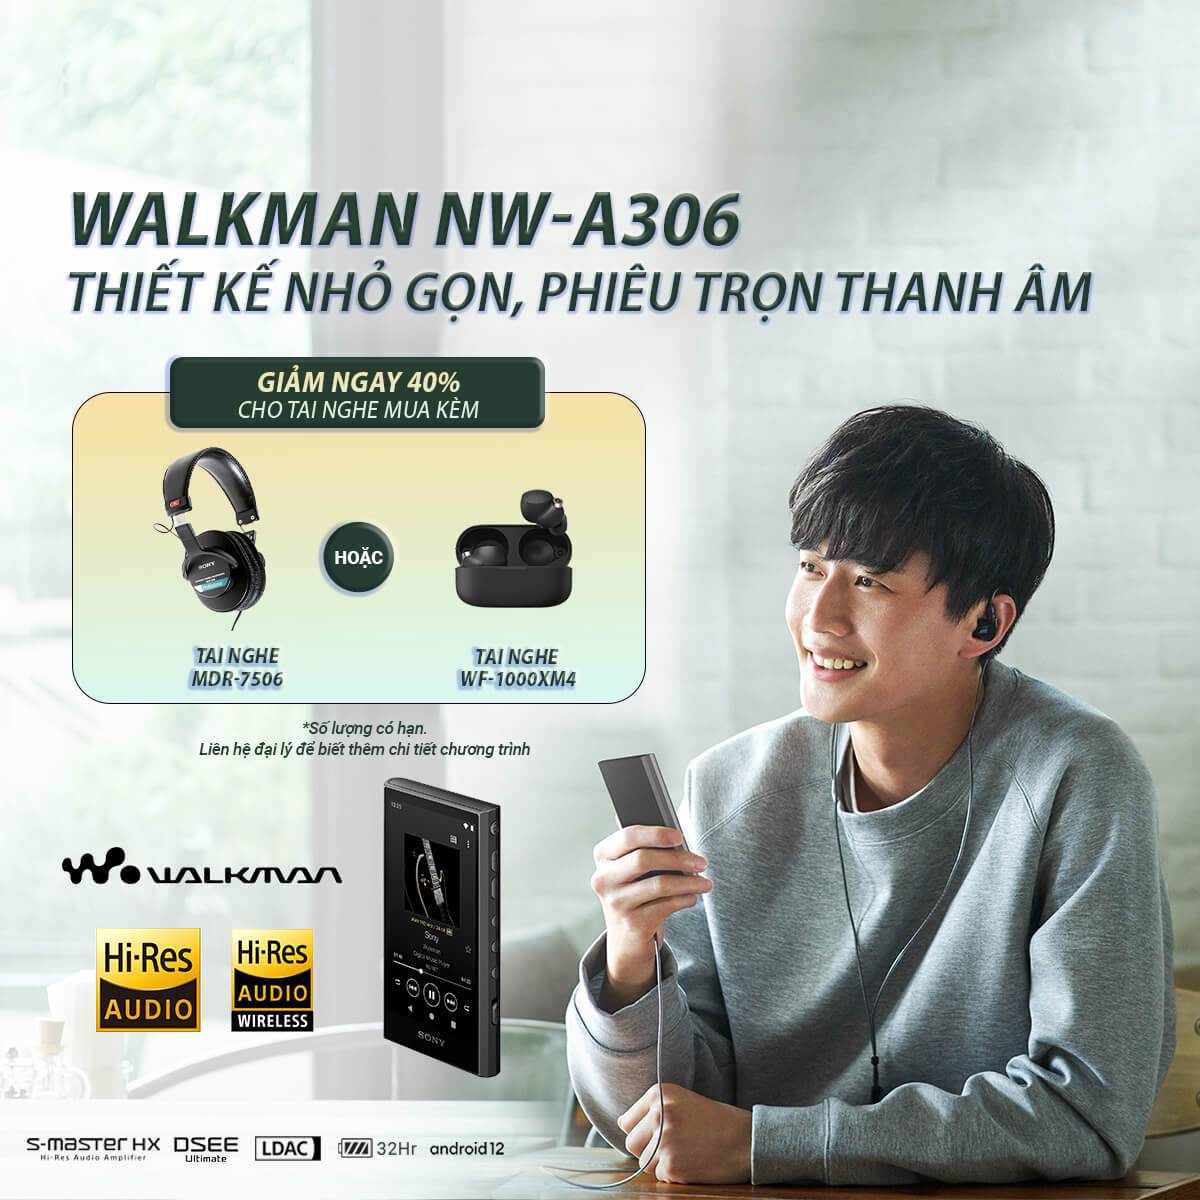 NW-A306 | Walkman® Dòng A300